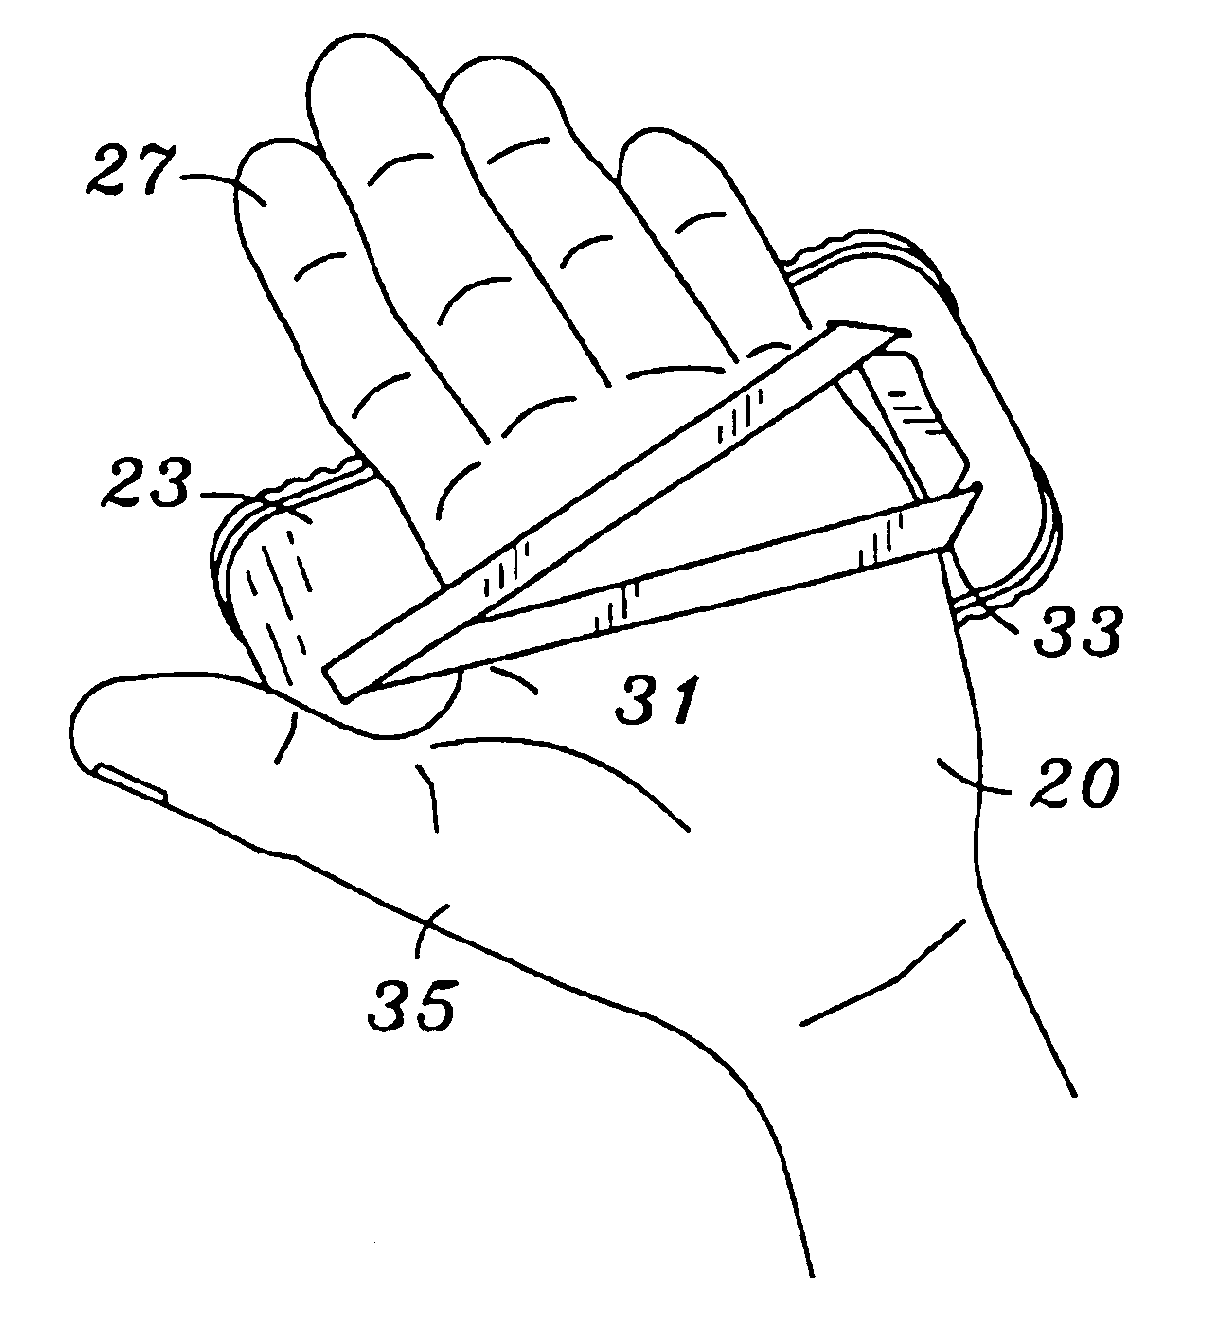 Hand mounted testing meter